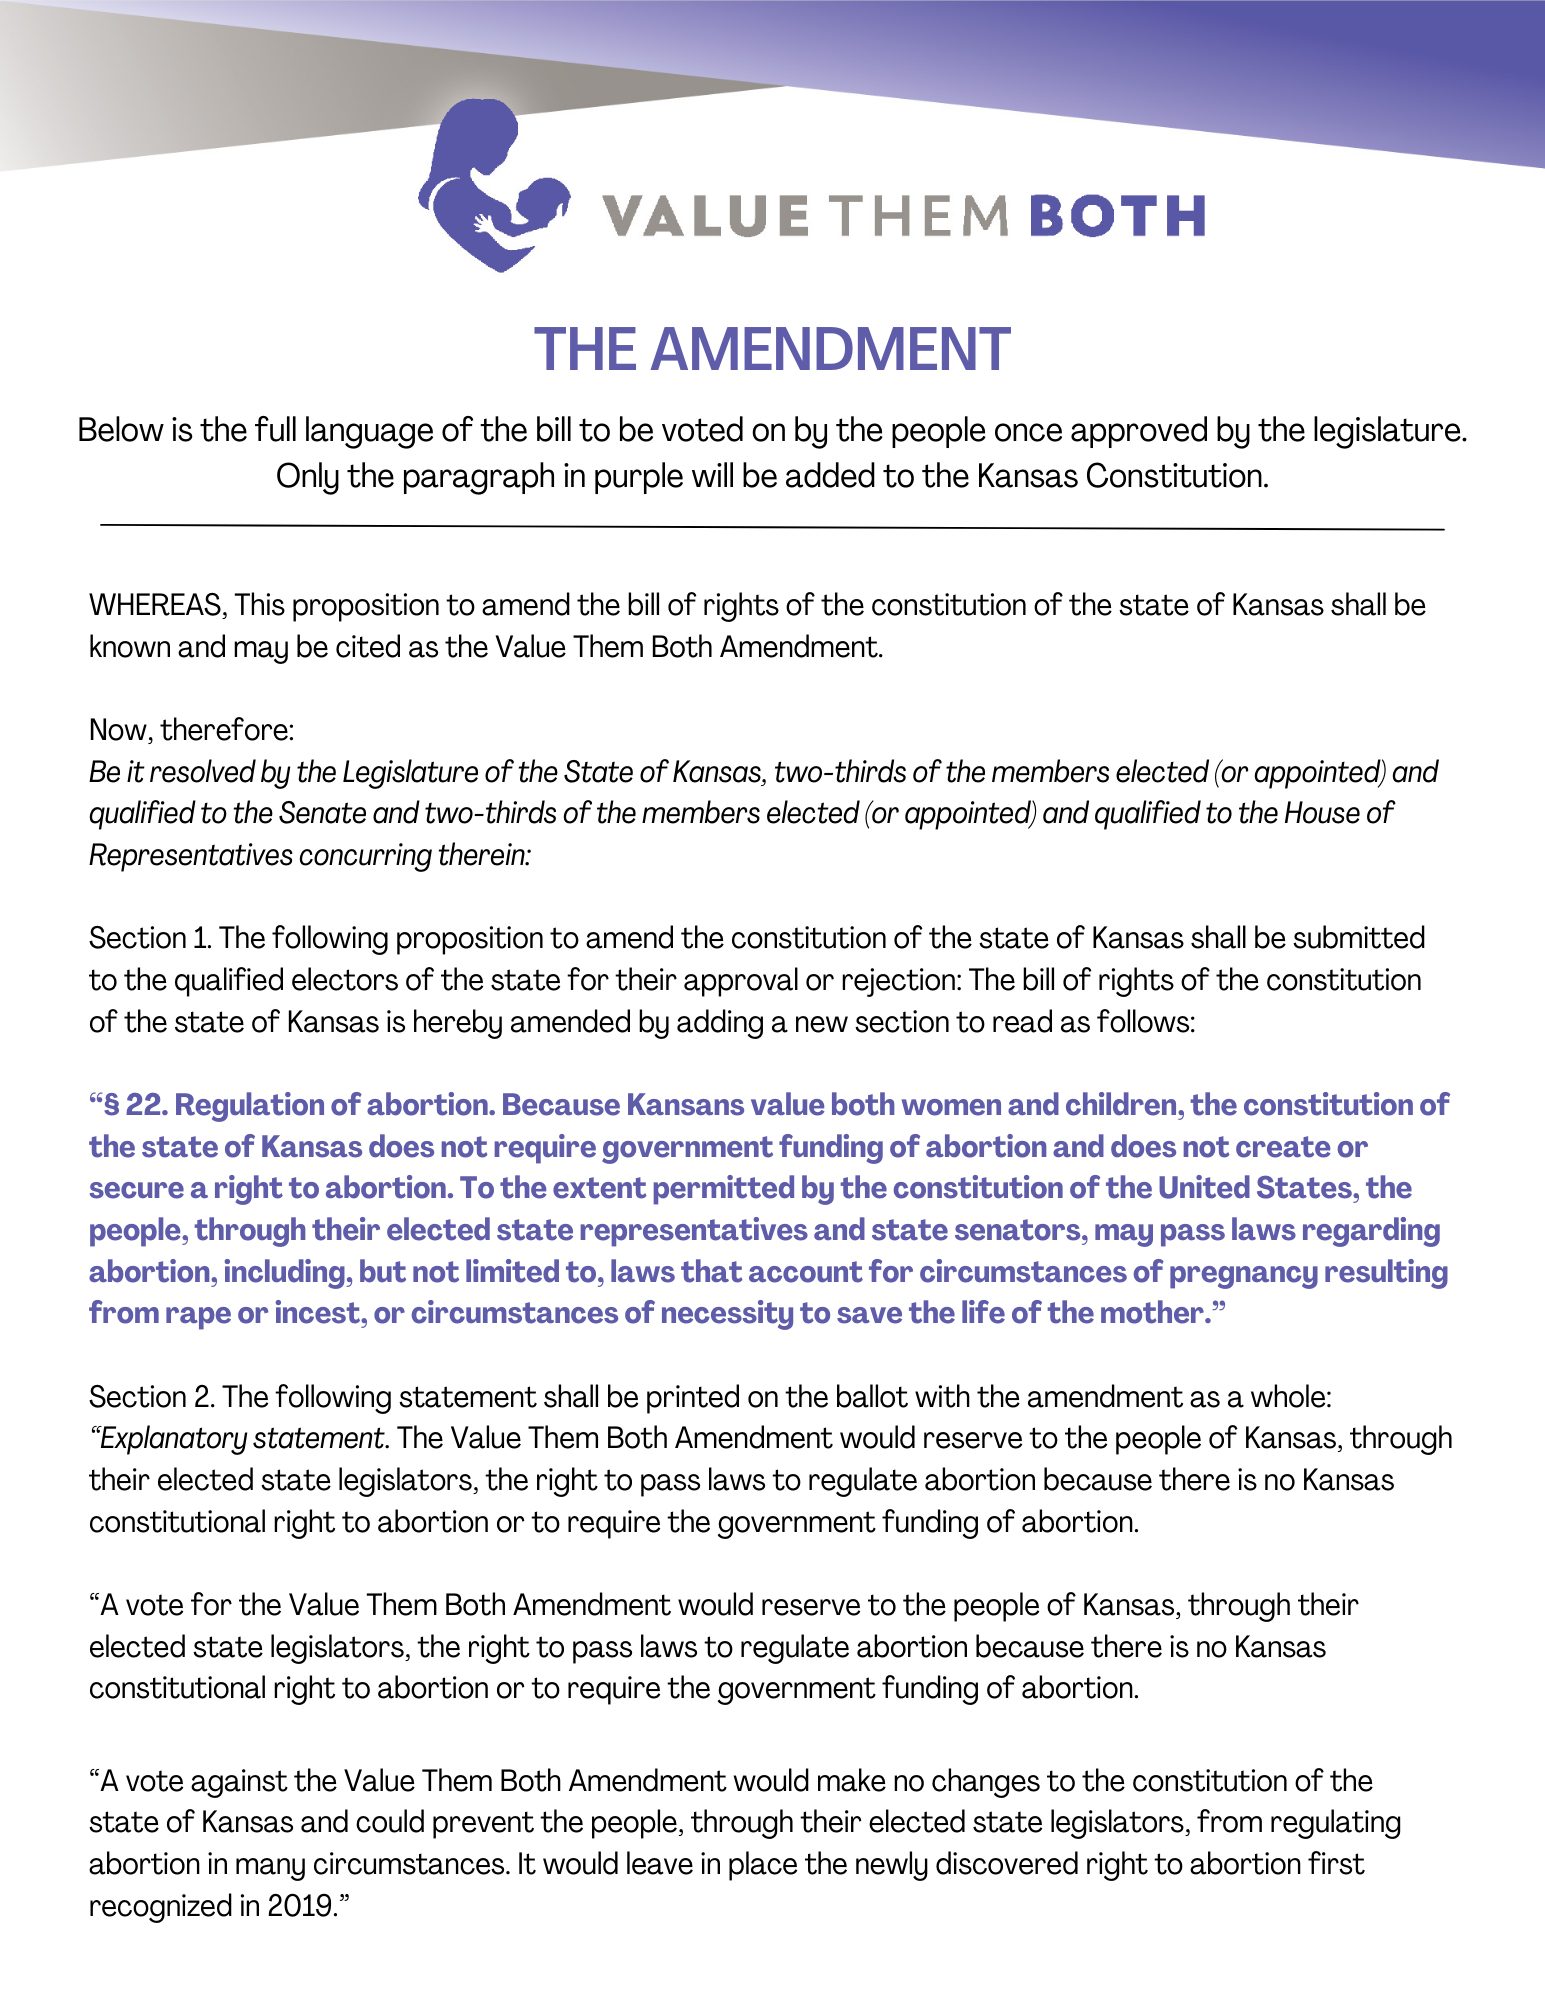 VTB Amendment